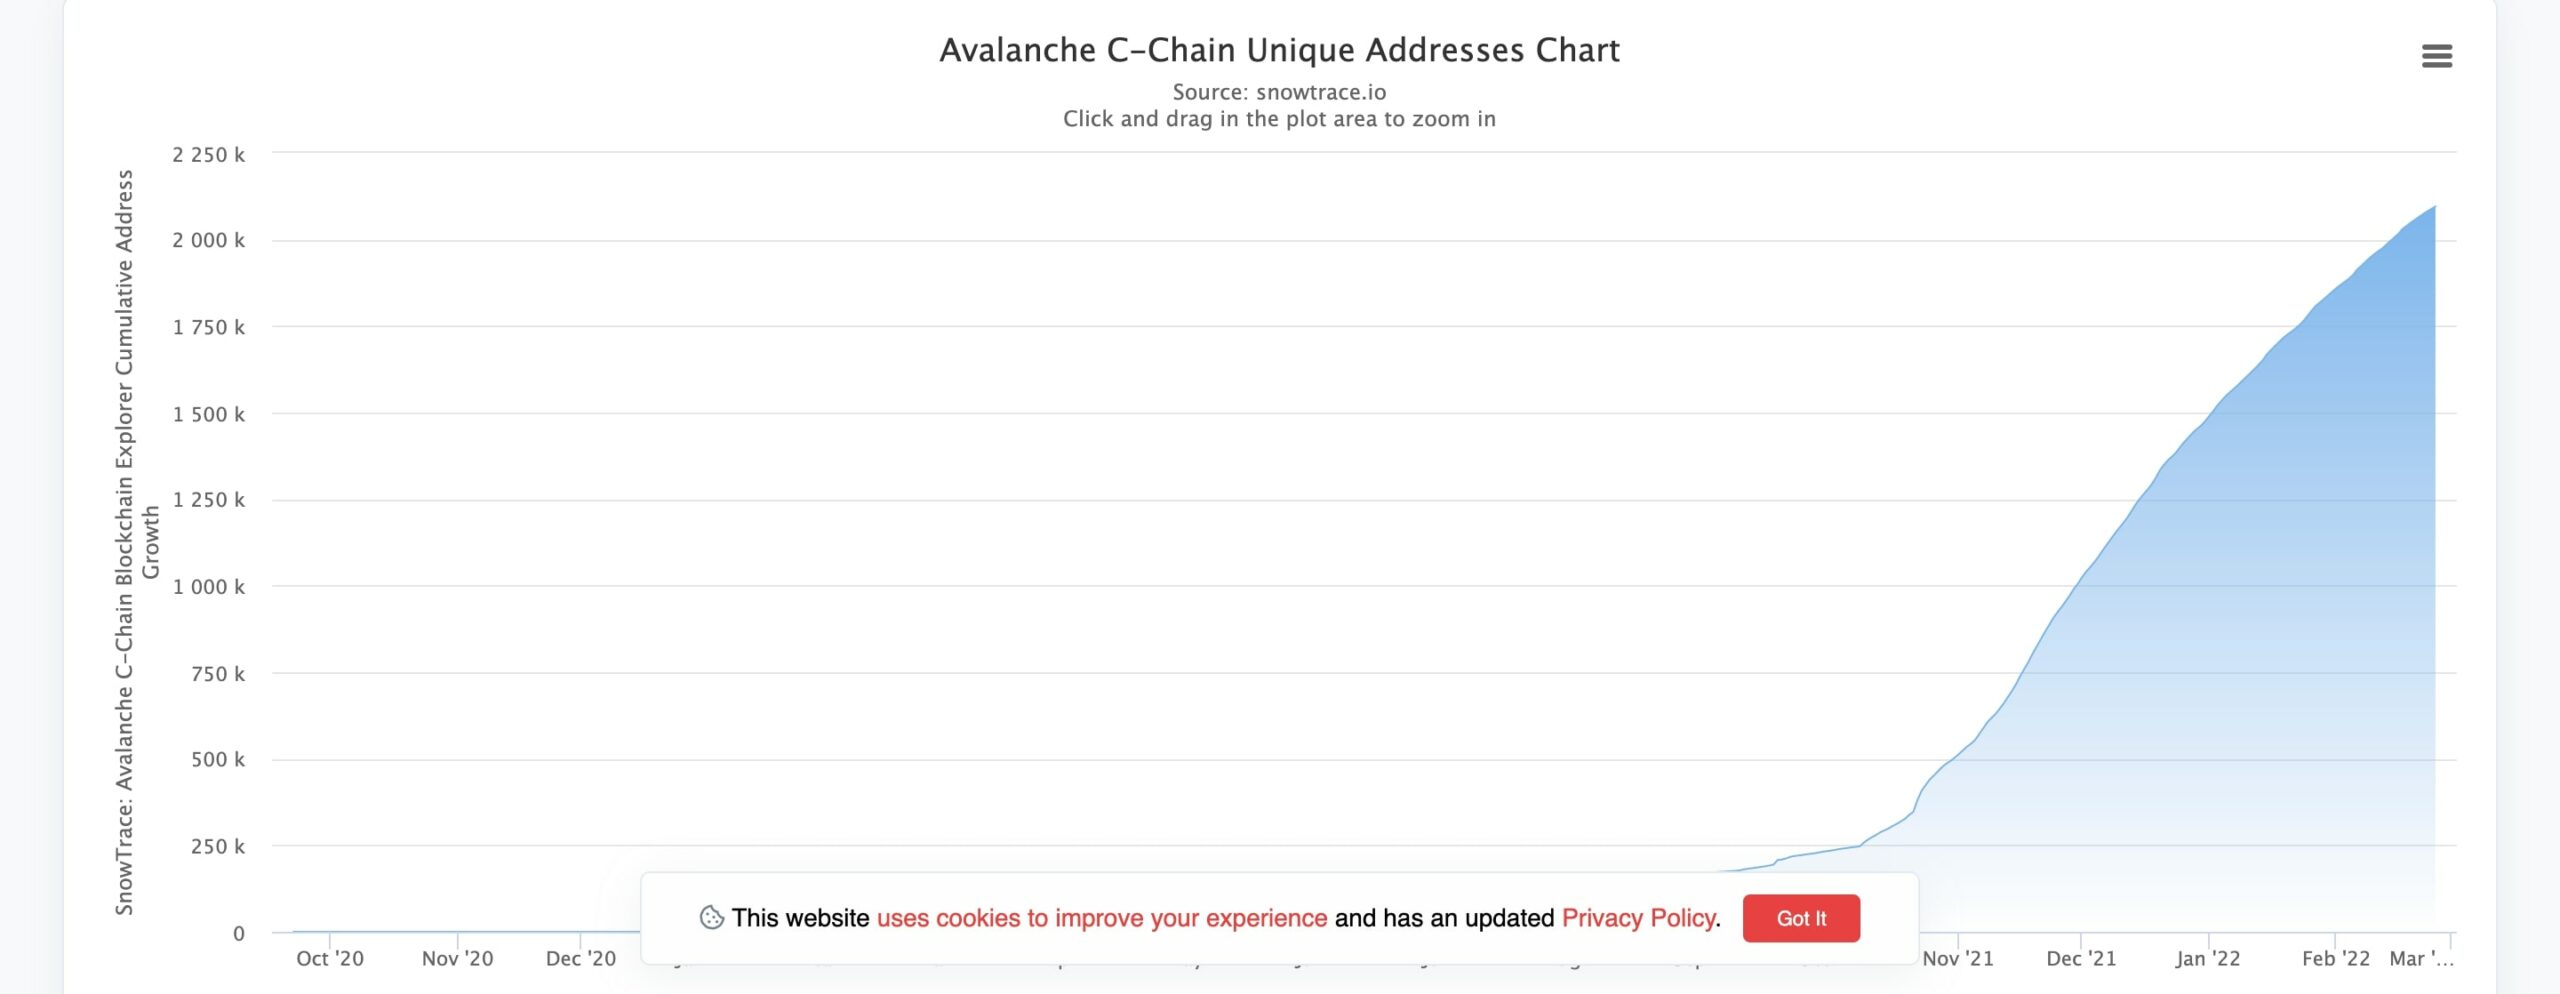 số địa chỉ hoạt động trên Avalanche